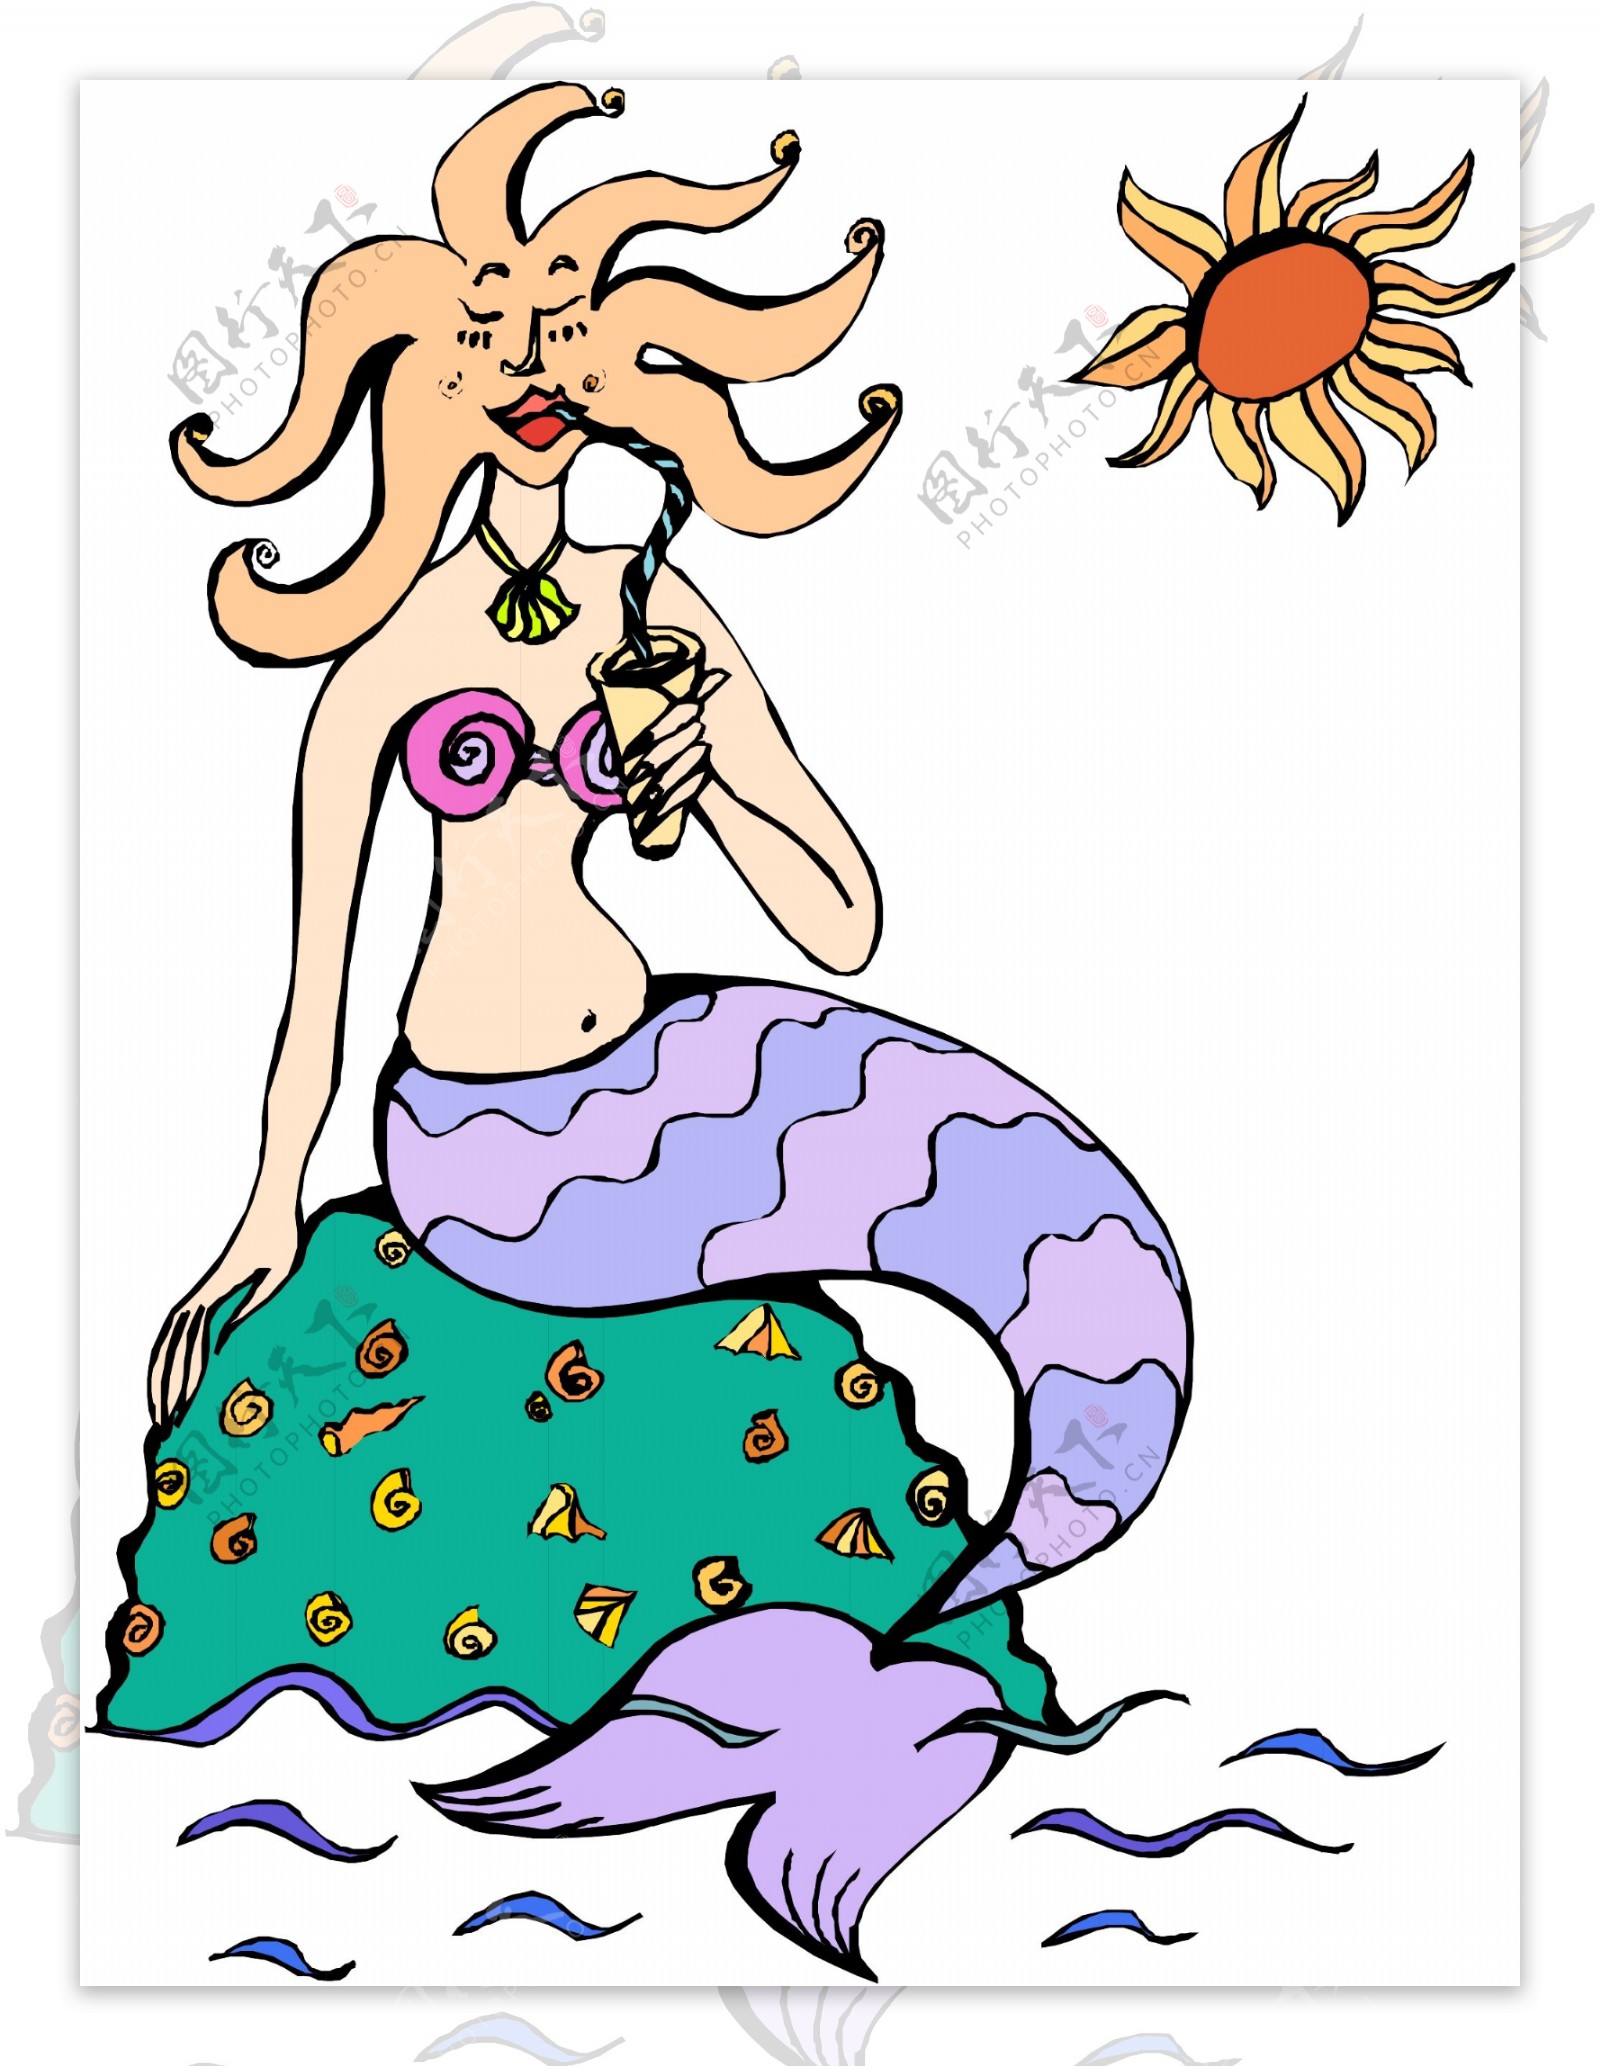 章鱼头的美人鱼坐在礁石上晒太阳